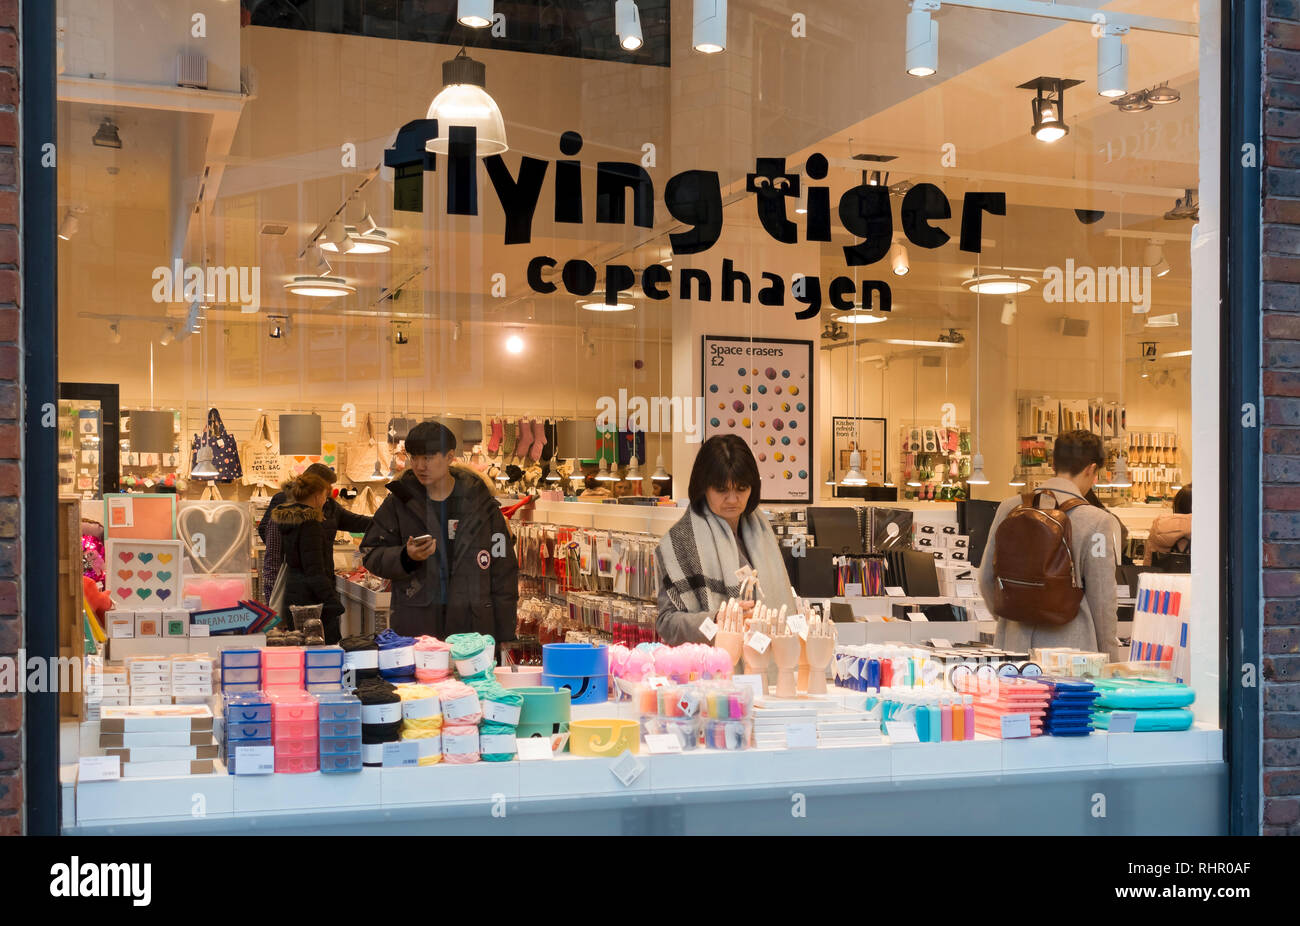 Flying tiger copenhagen immagini e fotografie stock ad alta risoluzione -  Alamy